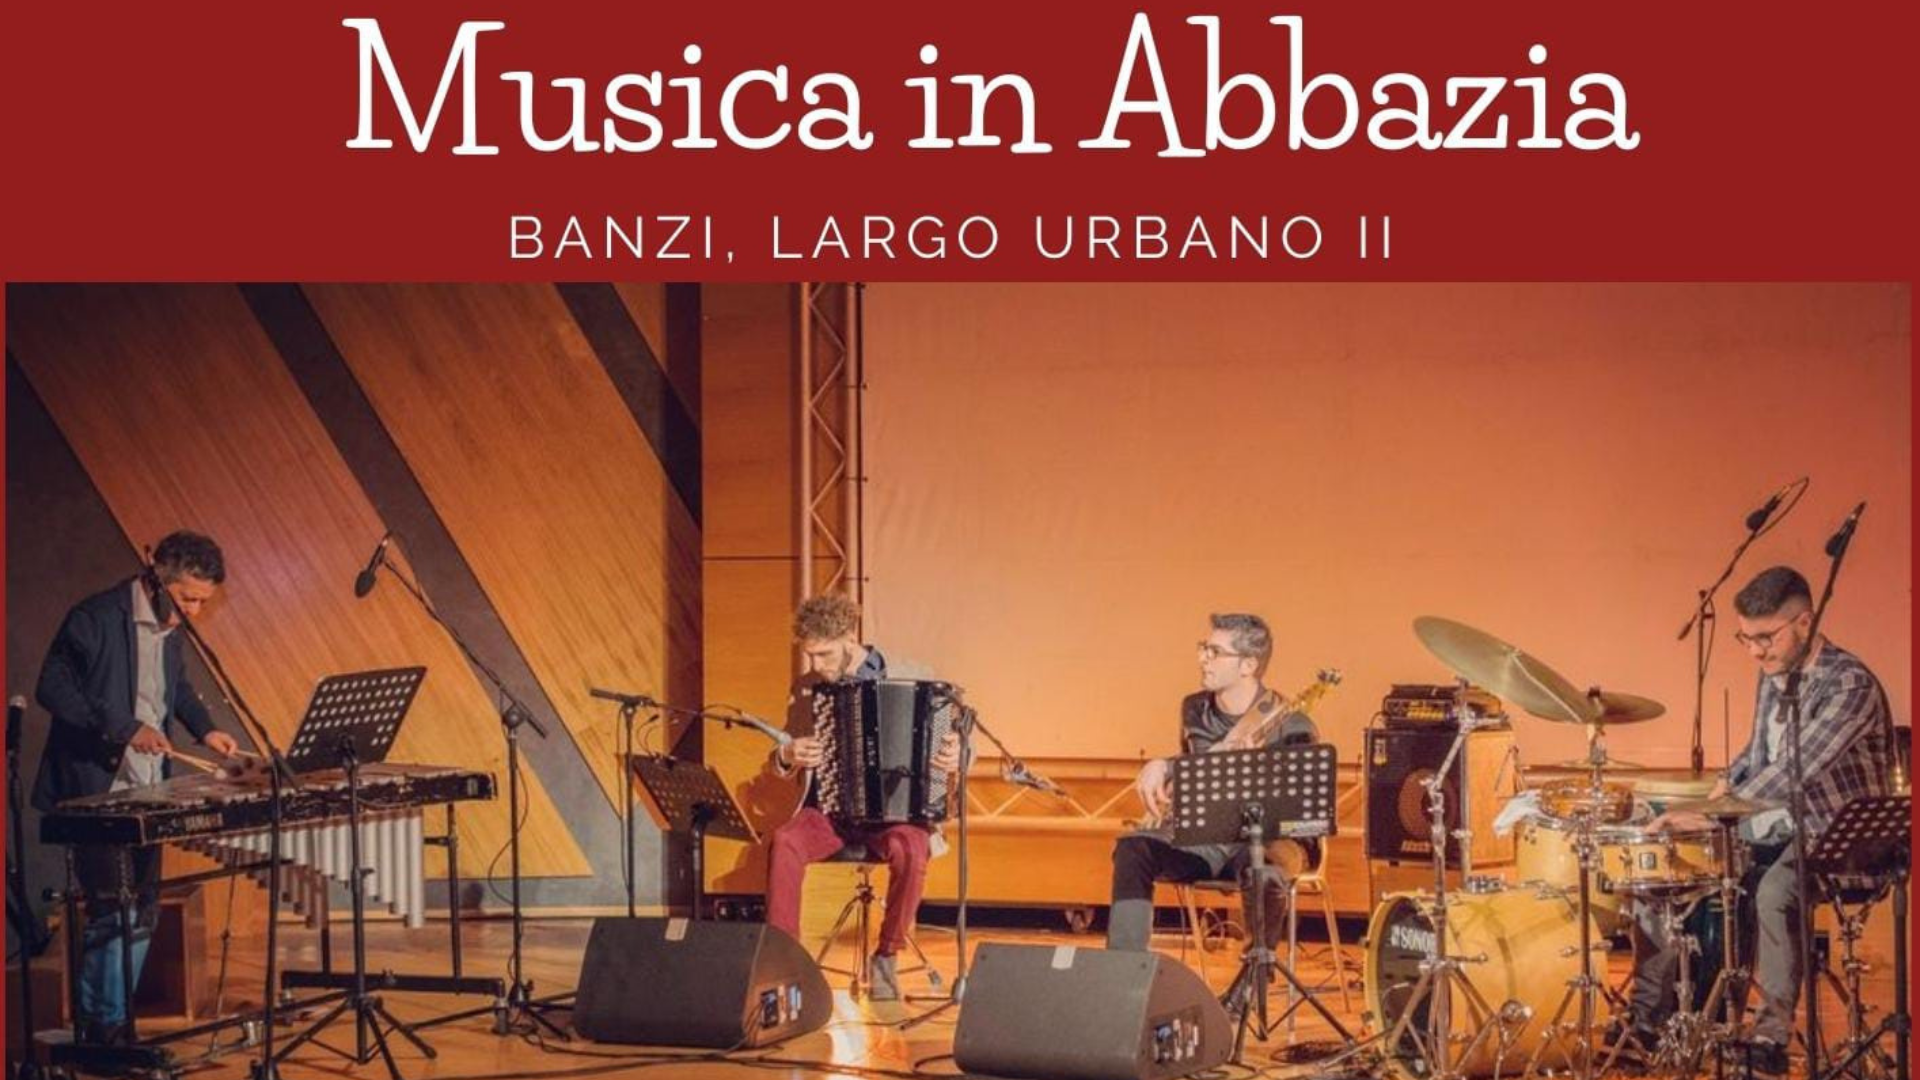 MUSICA IN ABBAZIA - BANZI